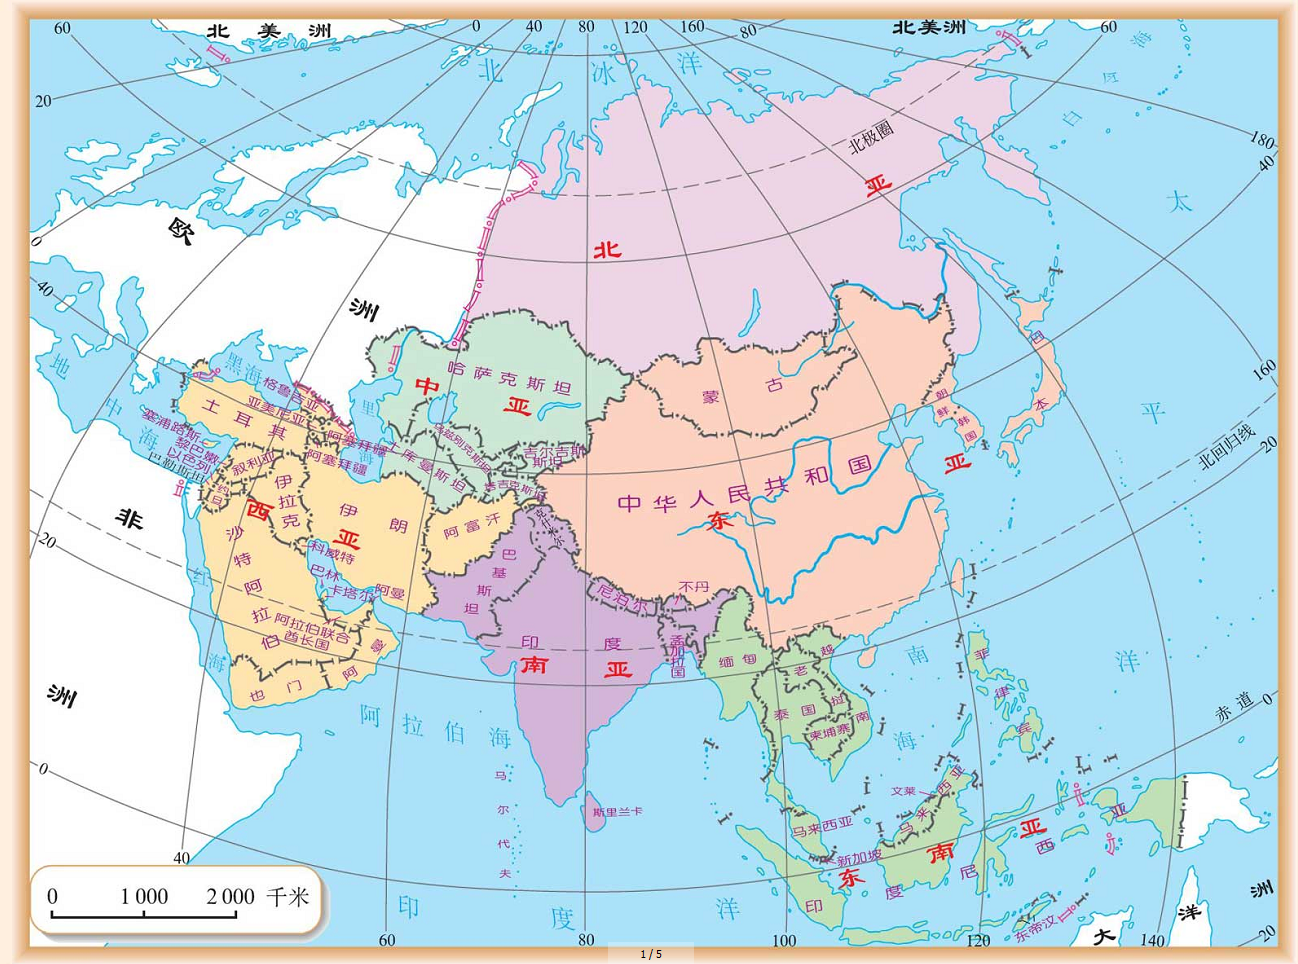 亚洲国家分布图 - 亚洲地图 - 地理教师网